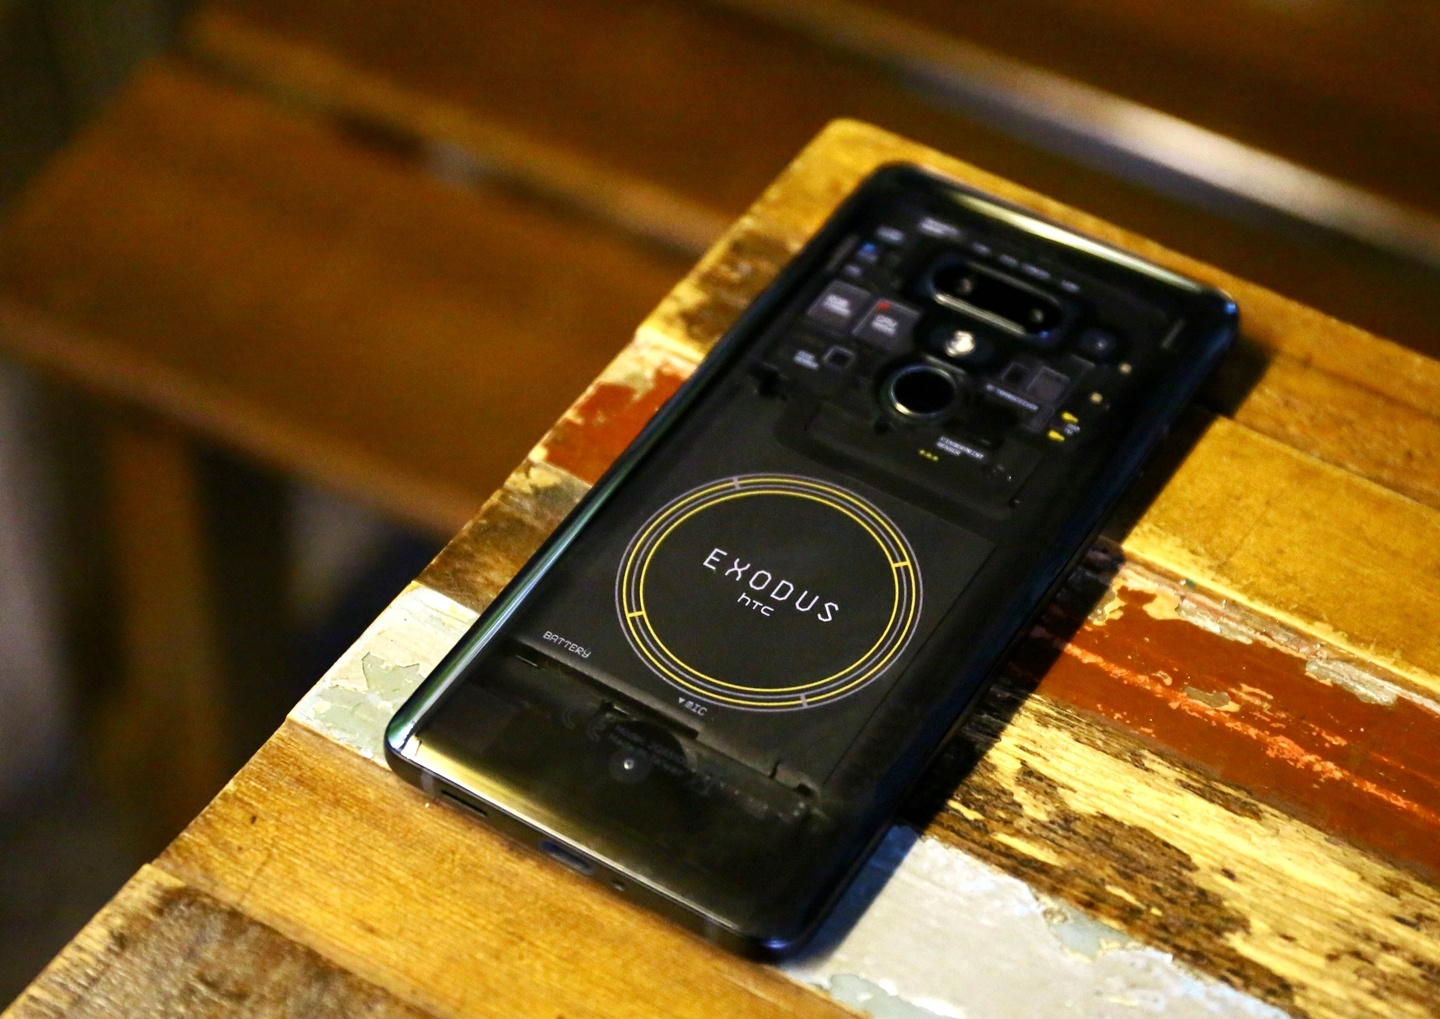 HTC的區塊鏈手機EXODUS 1 將可以在台灣門市用現金買得到啦